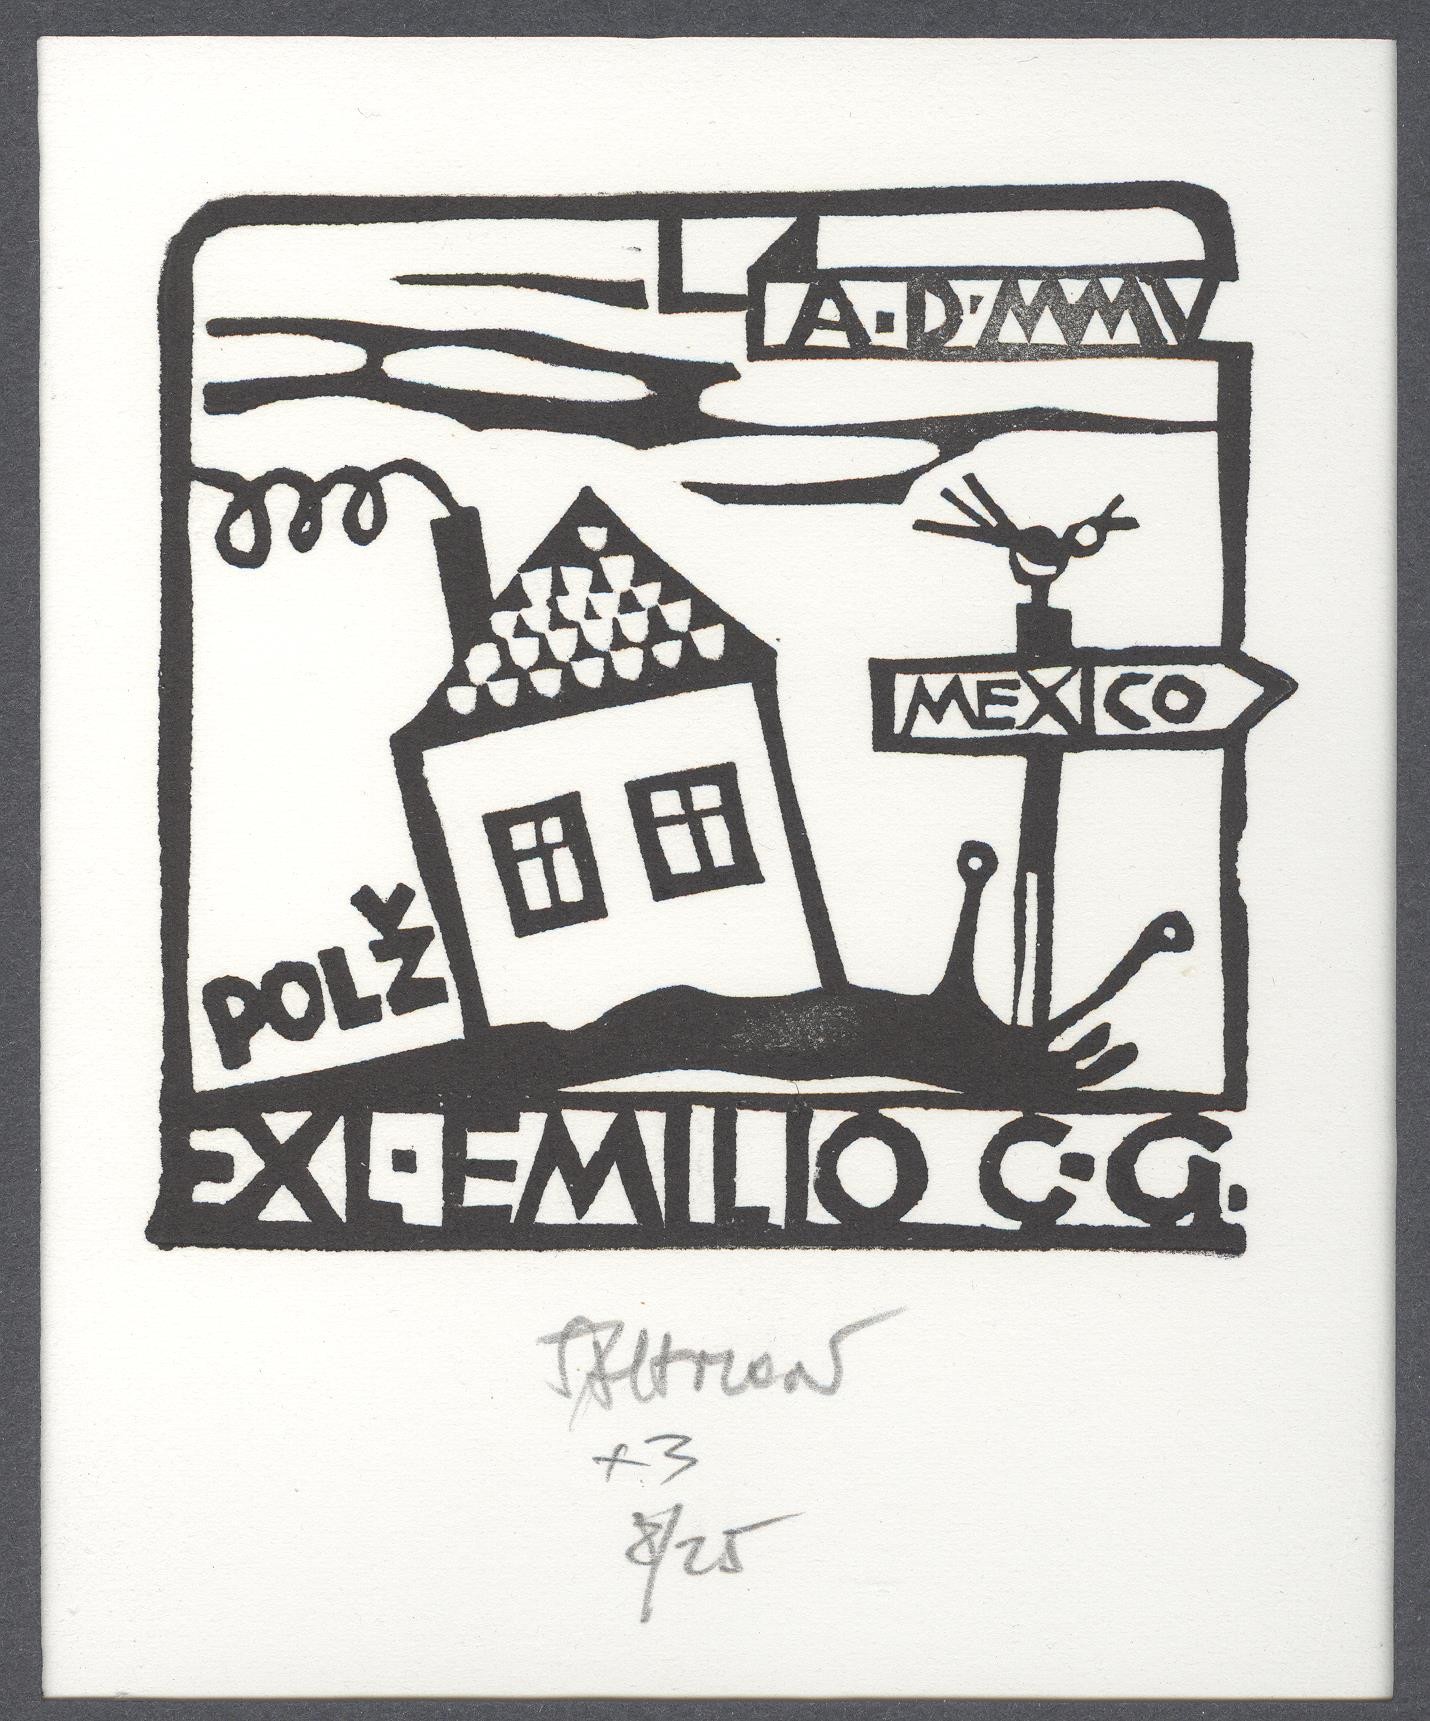 Ex-libris       A.D. MMV Mexico Polž-Mexico Emilio C-G (Holló László Galéria, Putnok CC BY-NC-SA)